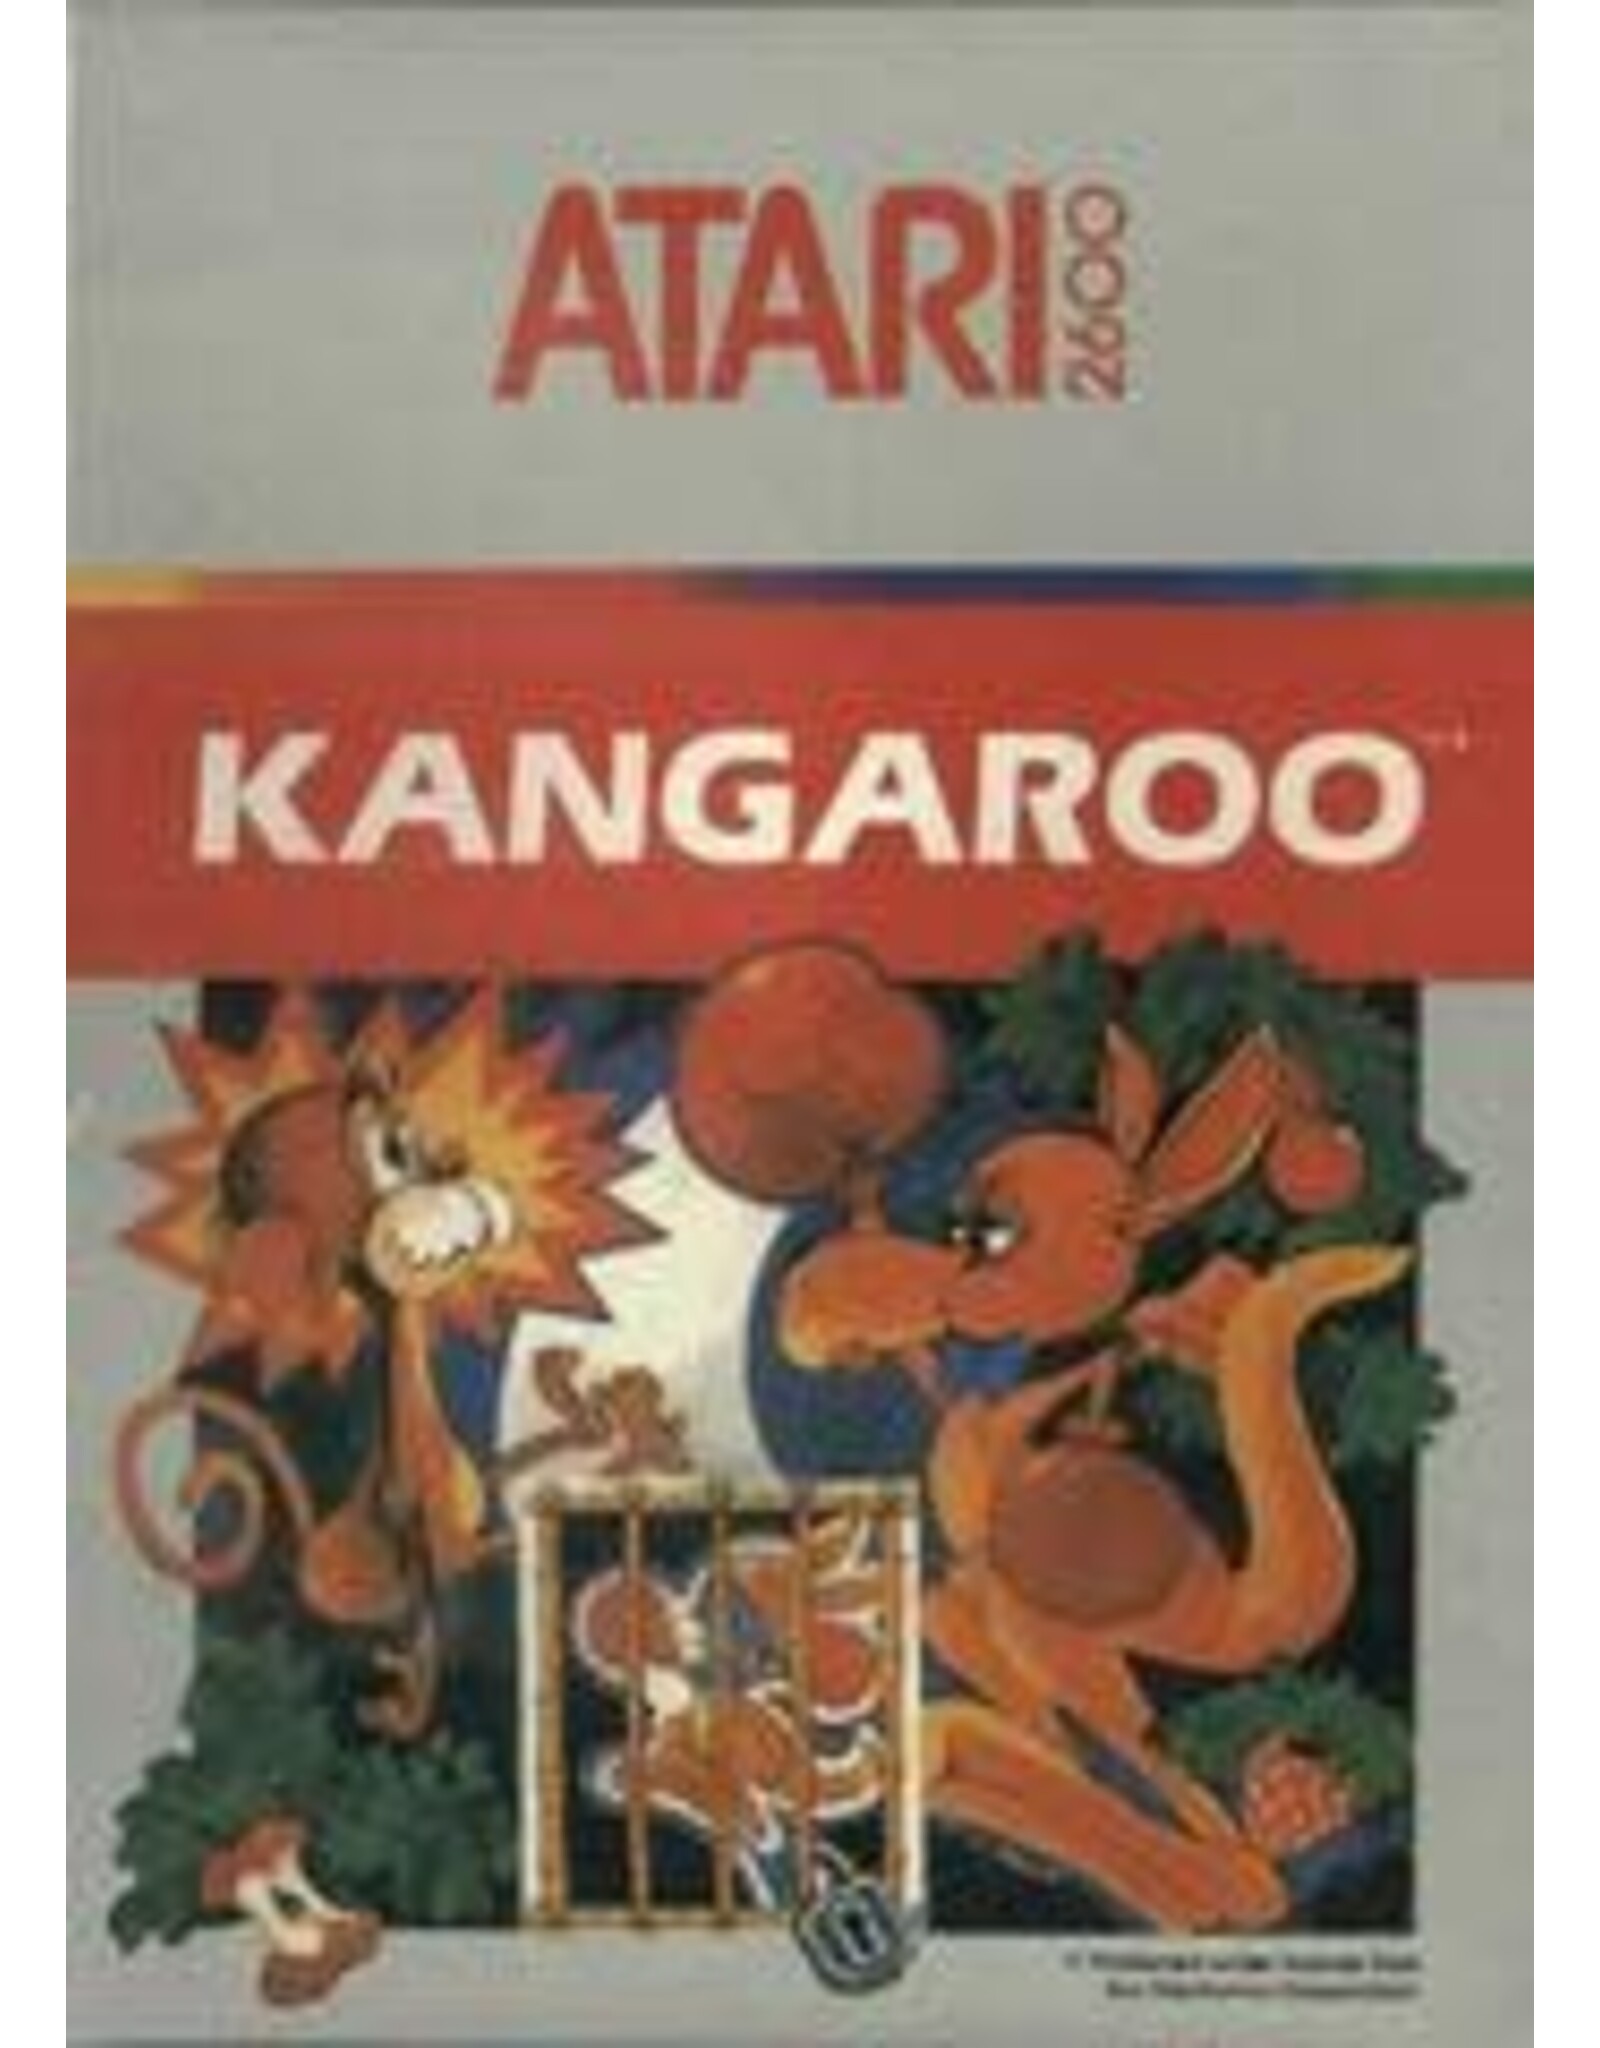 Atari 2600 Kangaroo (Cart Only)